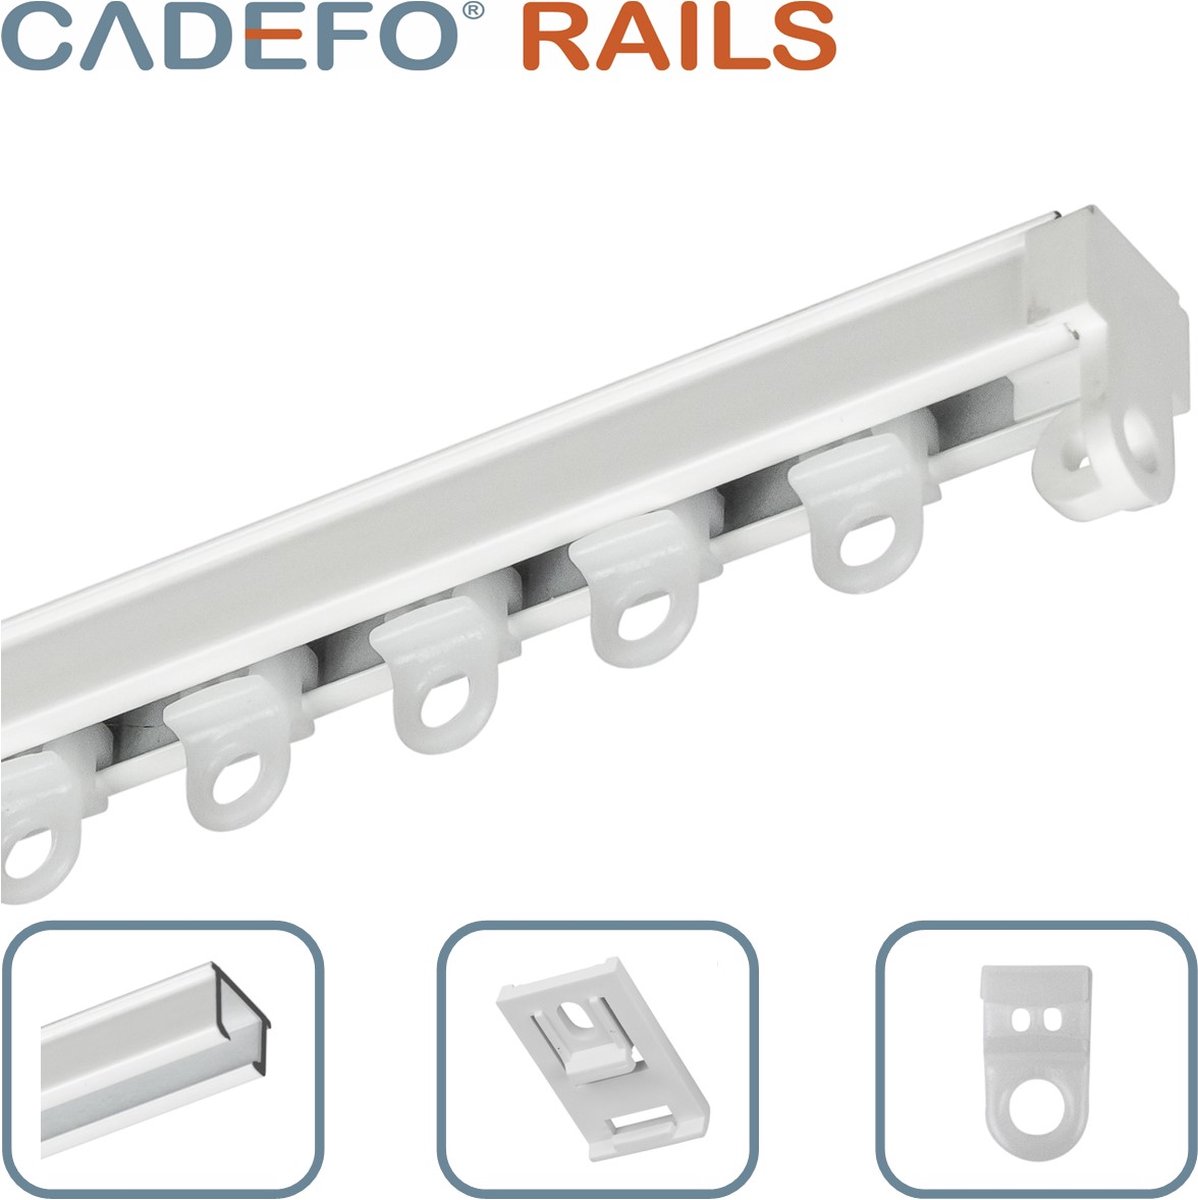 CADEFO RAILS (551 - 600 cm) Gordijnrails - Compleet op maat! - UIT 1 STUK - Leverbaar tot 6 meter - Plafondbevestiging - Lengte 584 cm